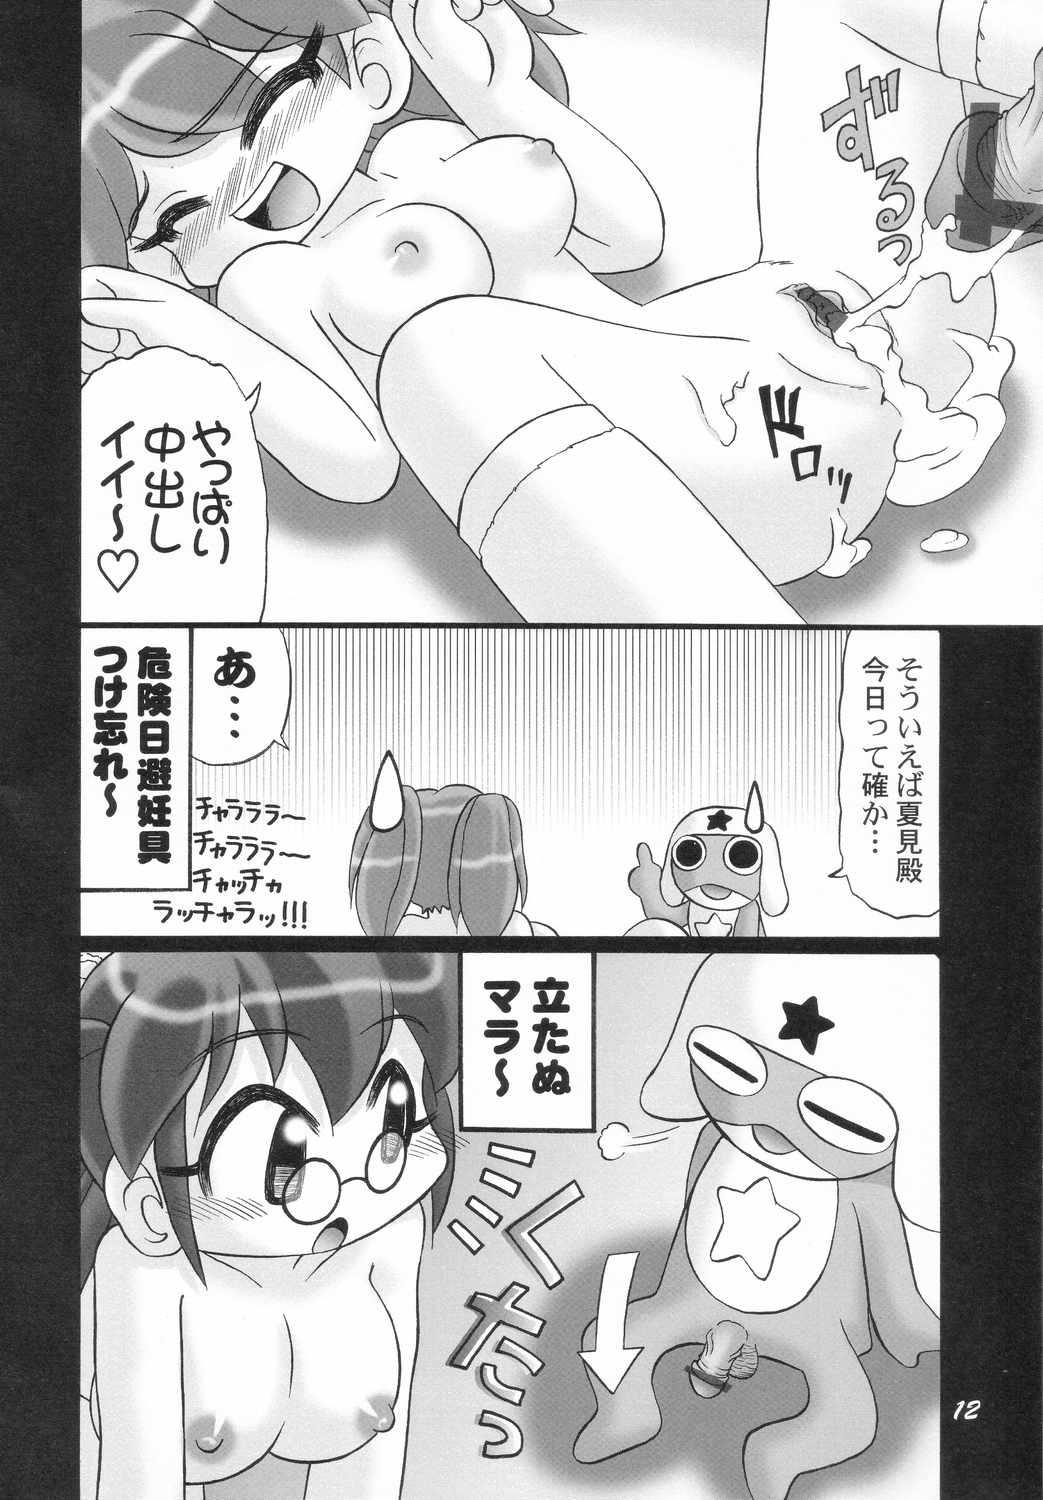 Pene Eroro Gunsou - Keroro gunsou Cojiendo - Page 11